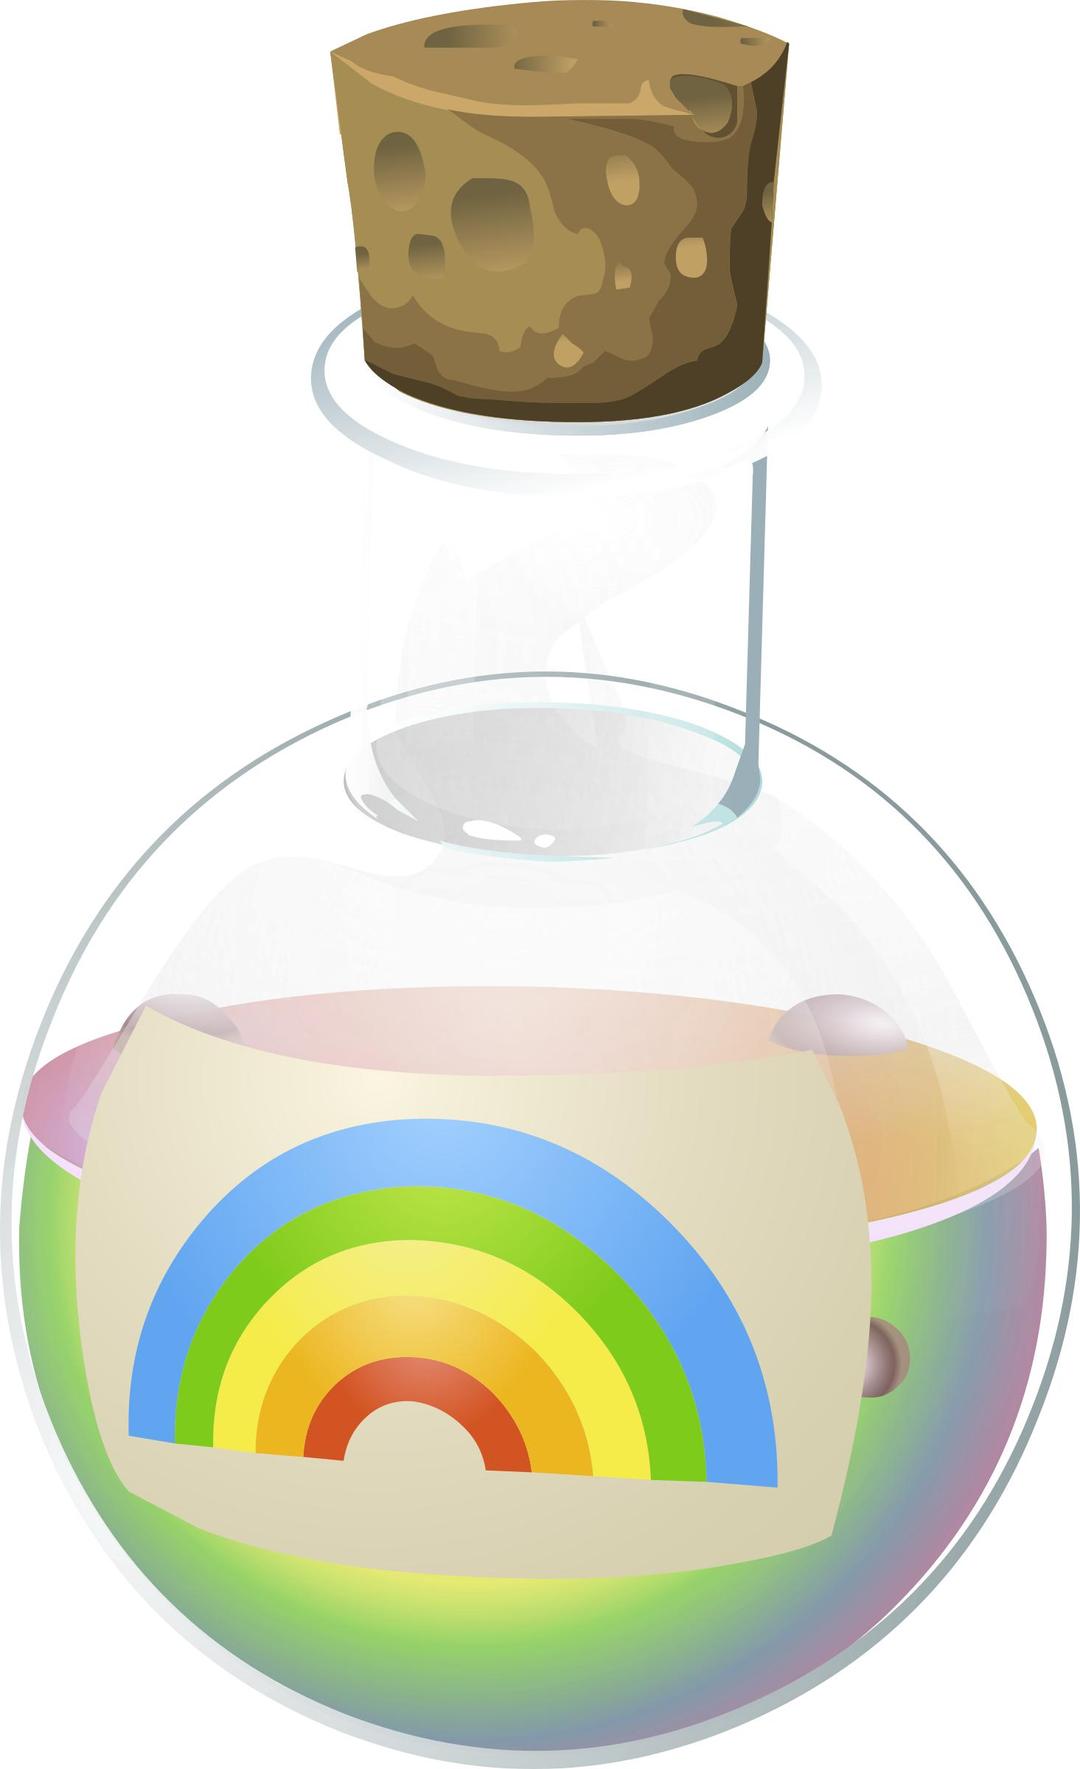 Alchemy Potion Rainbow Juice png transparent